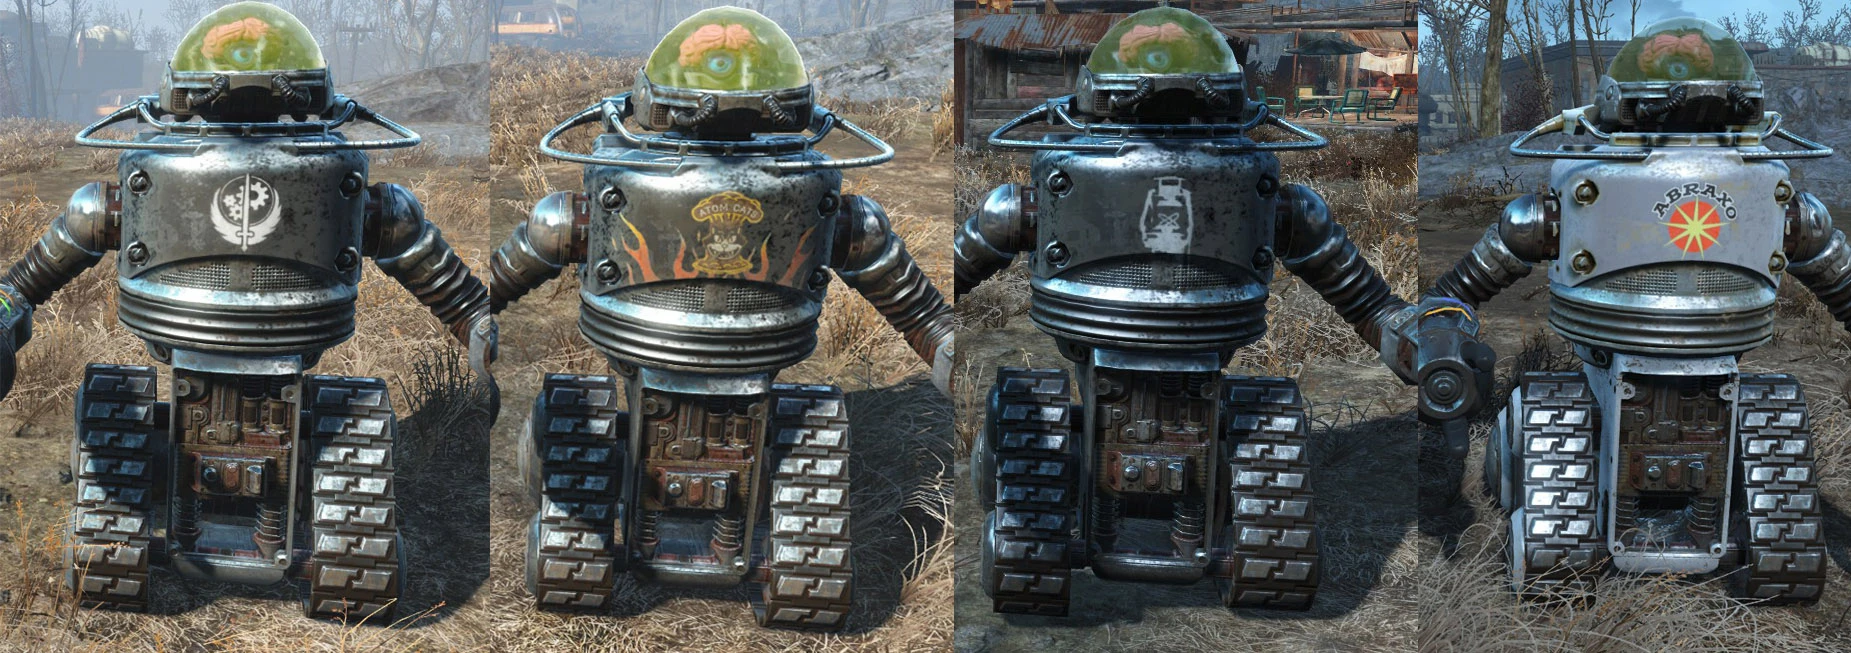 Fallout 4 automatron robot фото 102